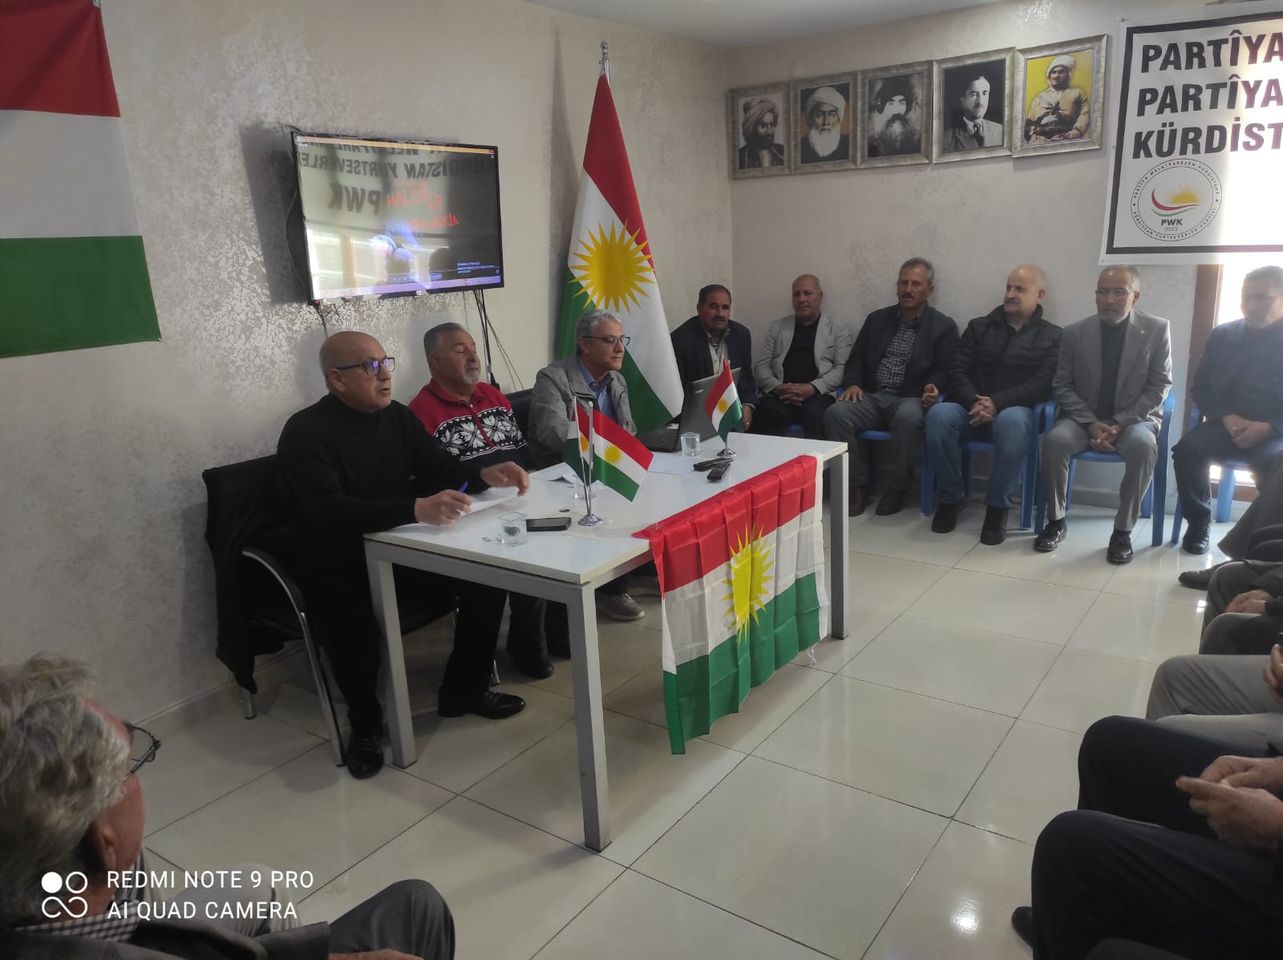 Kürdistan Yurtseverler Partisi (PWK) Diyarbakır, Mardin, Van, Batman ve İstanbul’da Halepçe Soykırımı’nı Anma Etkinlikleri Düzenledi